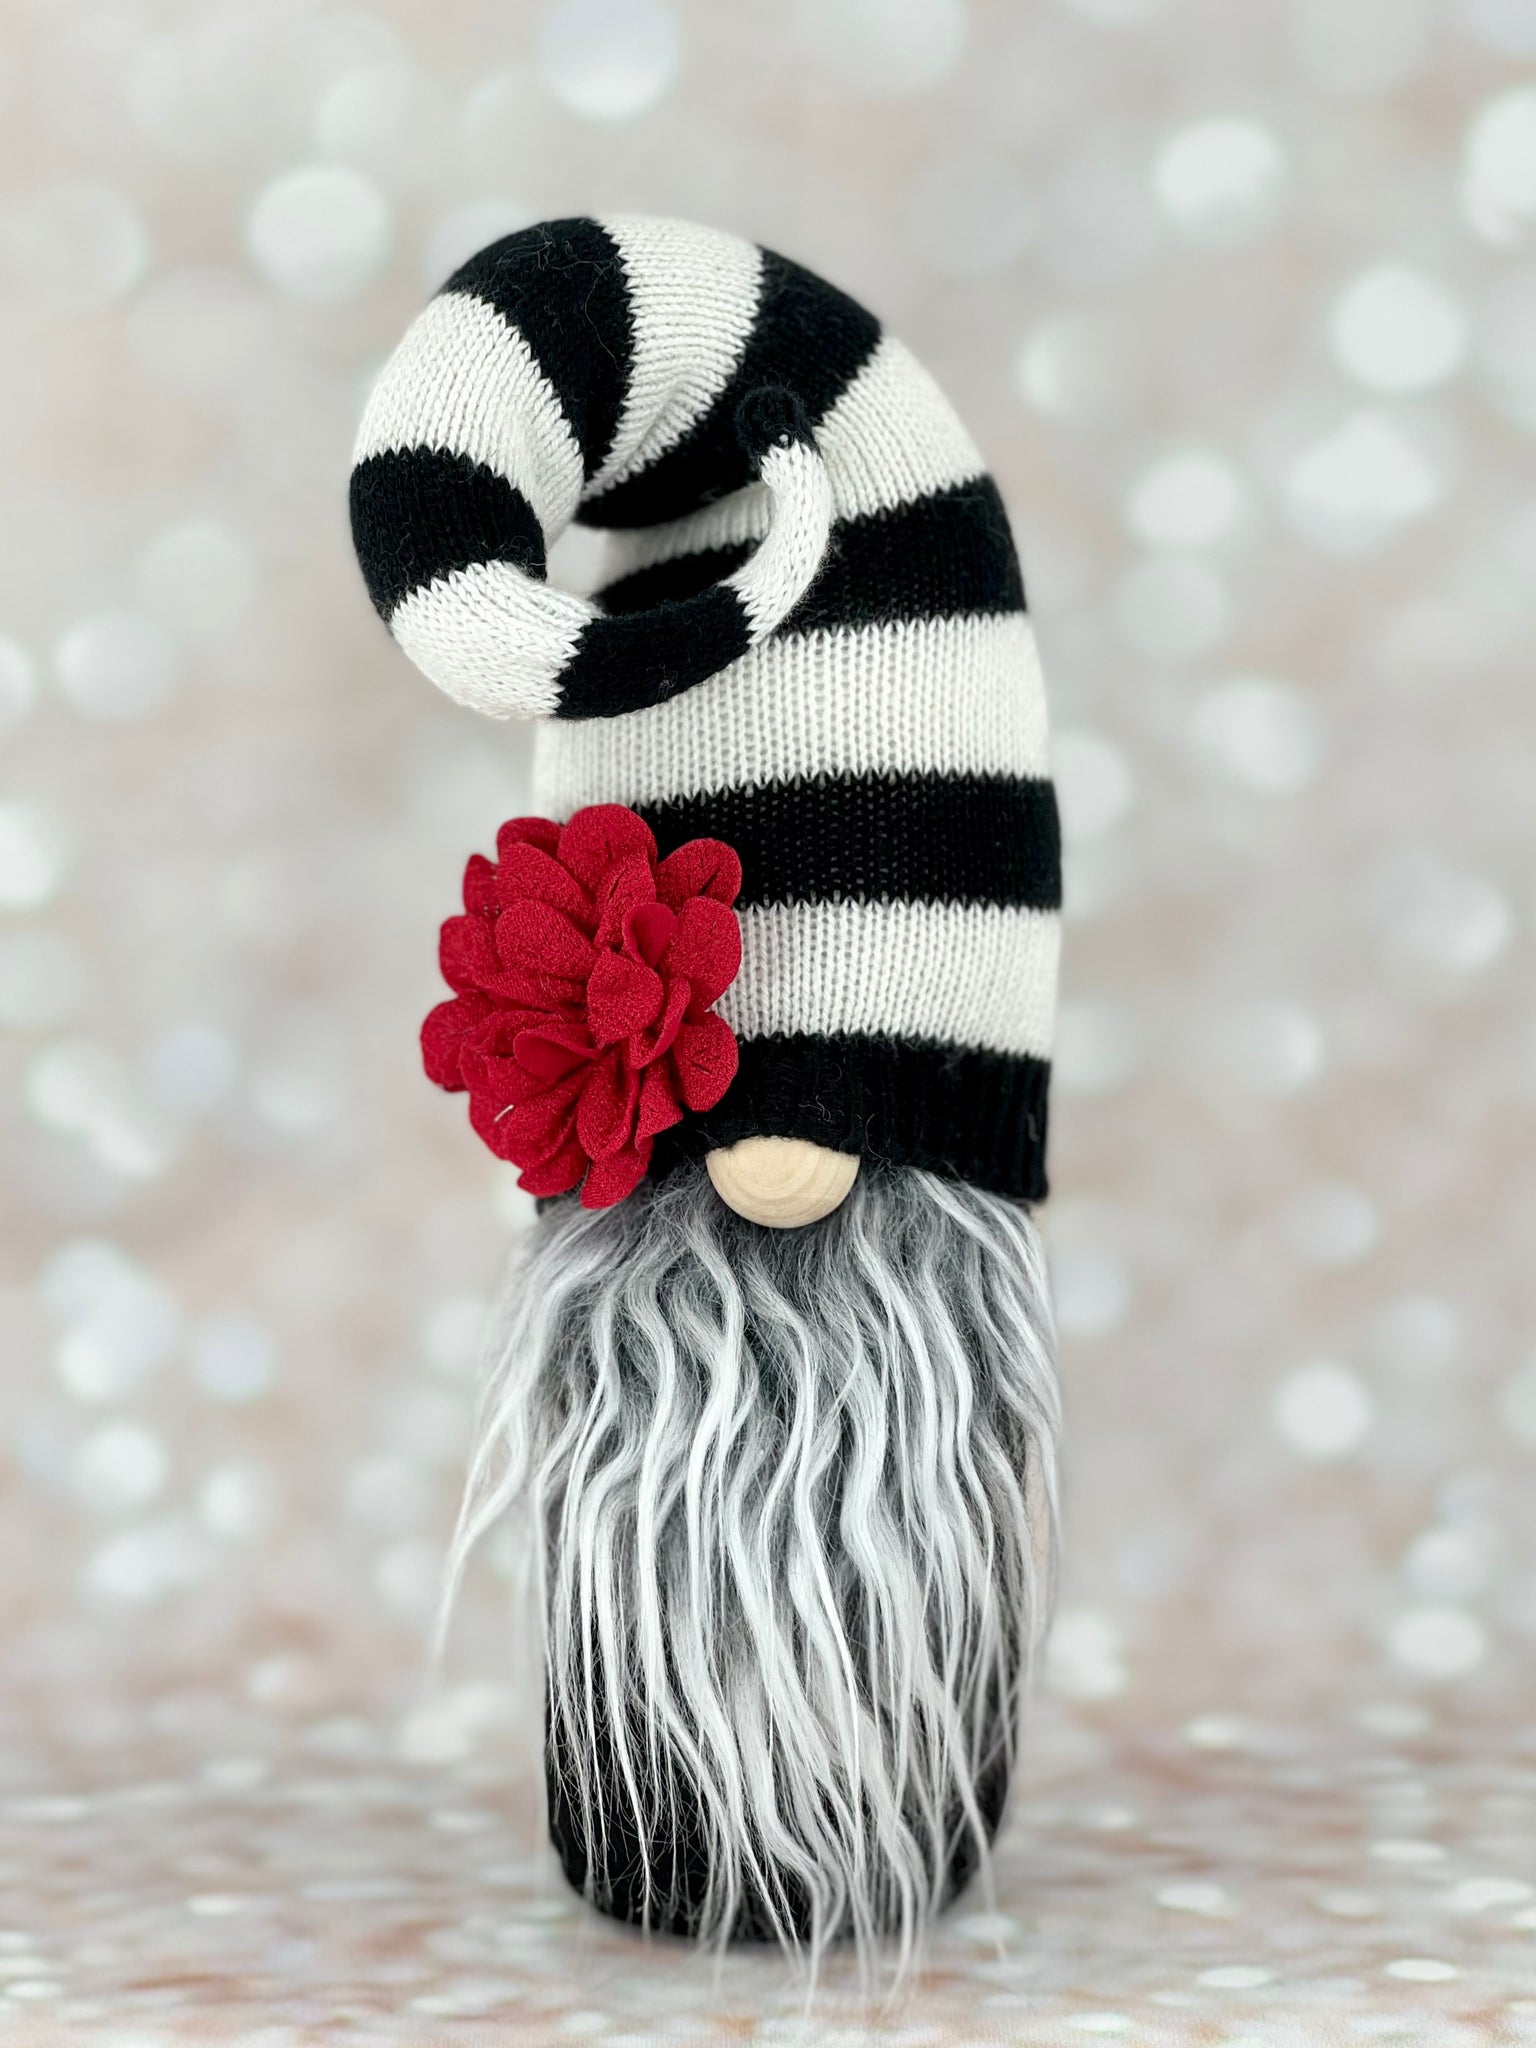 Black and White Striped Gnome